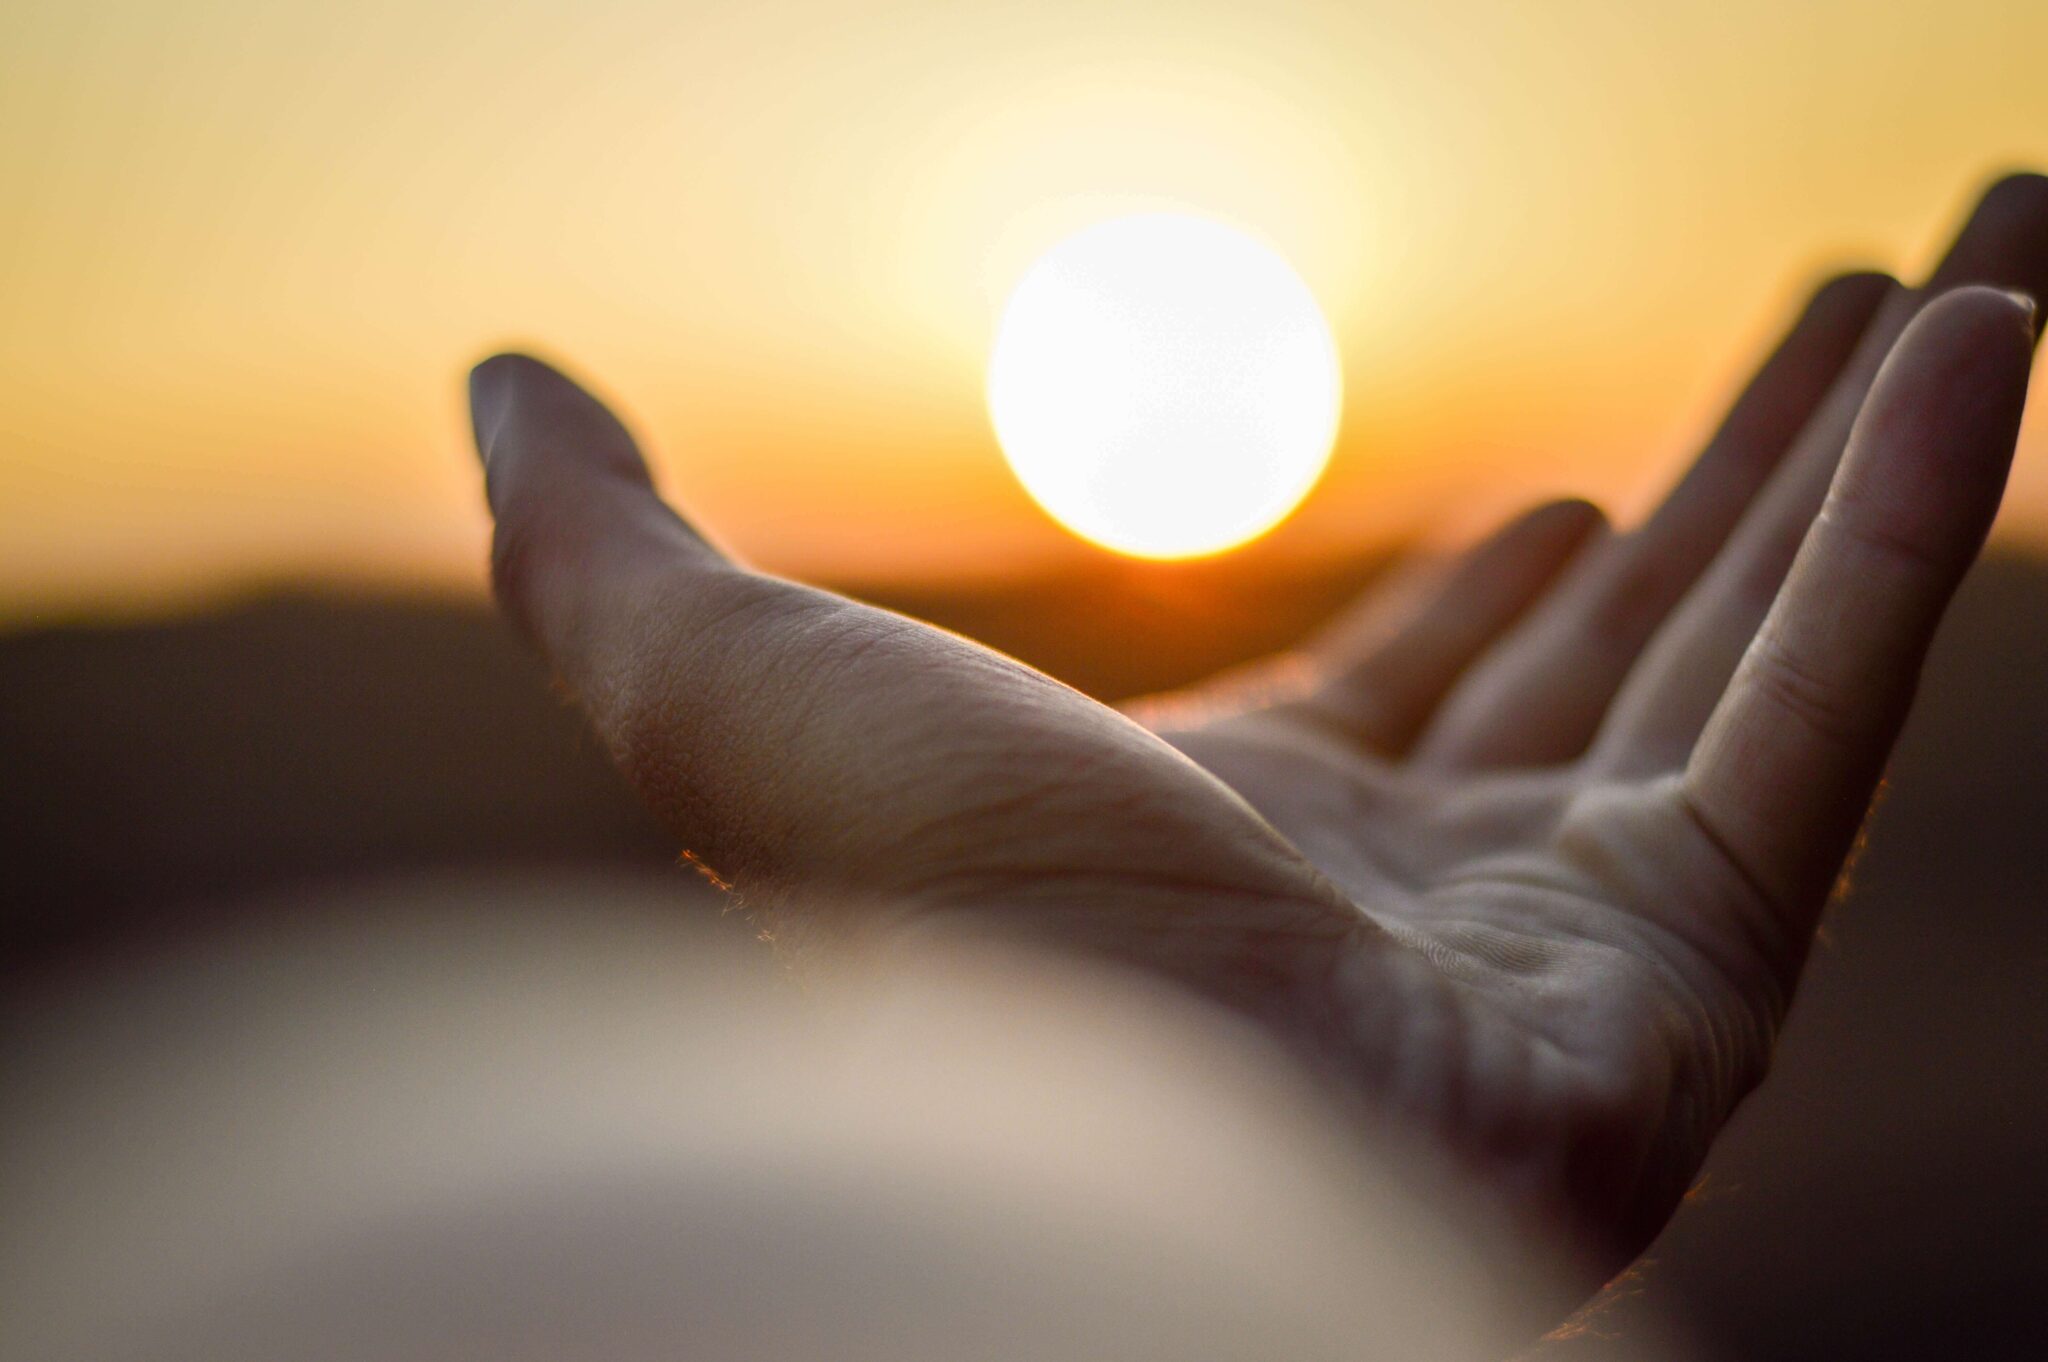 eine Hand im Vordergrund hält optisch täuschend die Sonne im Sonnenuntergang in der Hand, die Hand im Vordergrund ist scharf, der Rest des Bildes ist unscharf